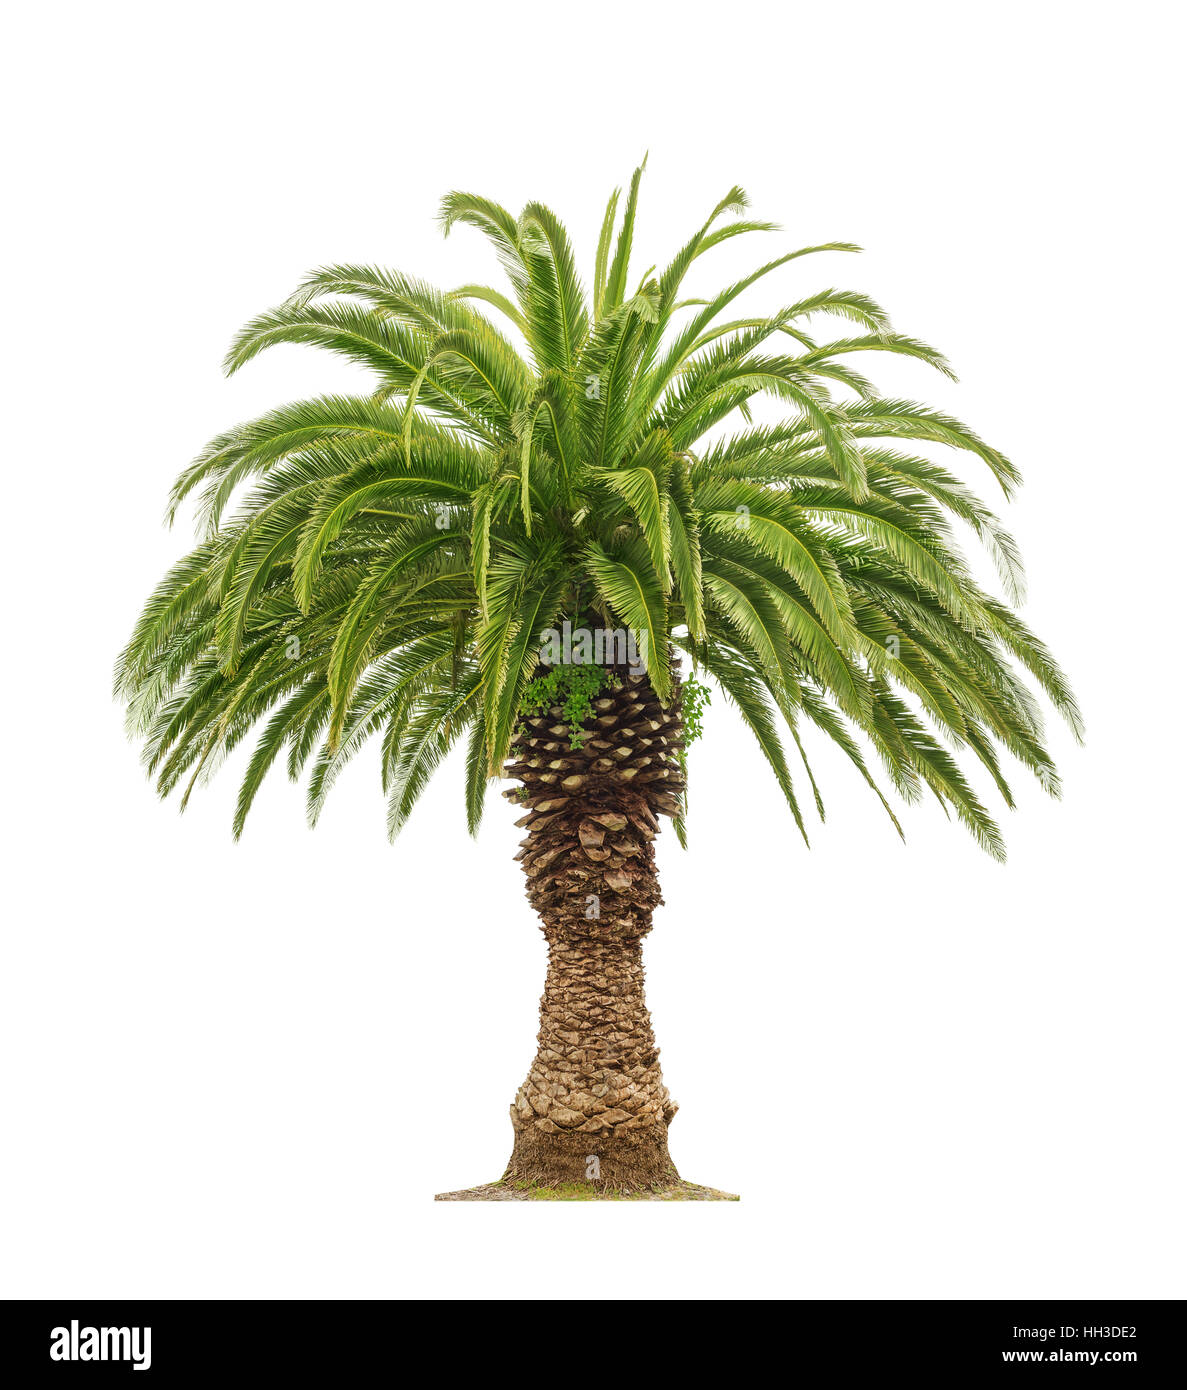 Bella verde Palm tree isolati su sfondo bianco Foto Stock